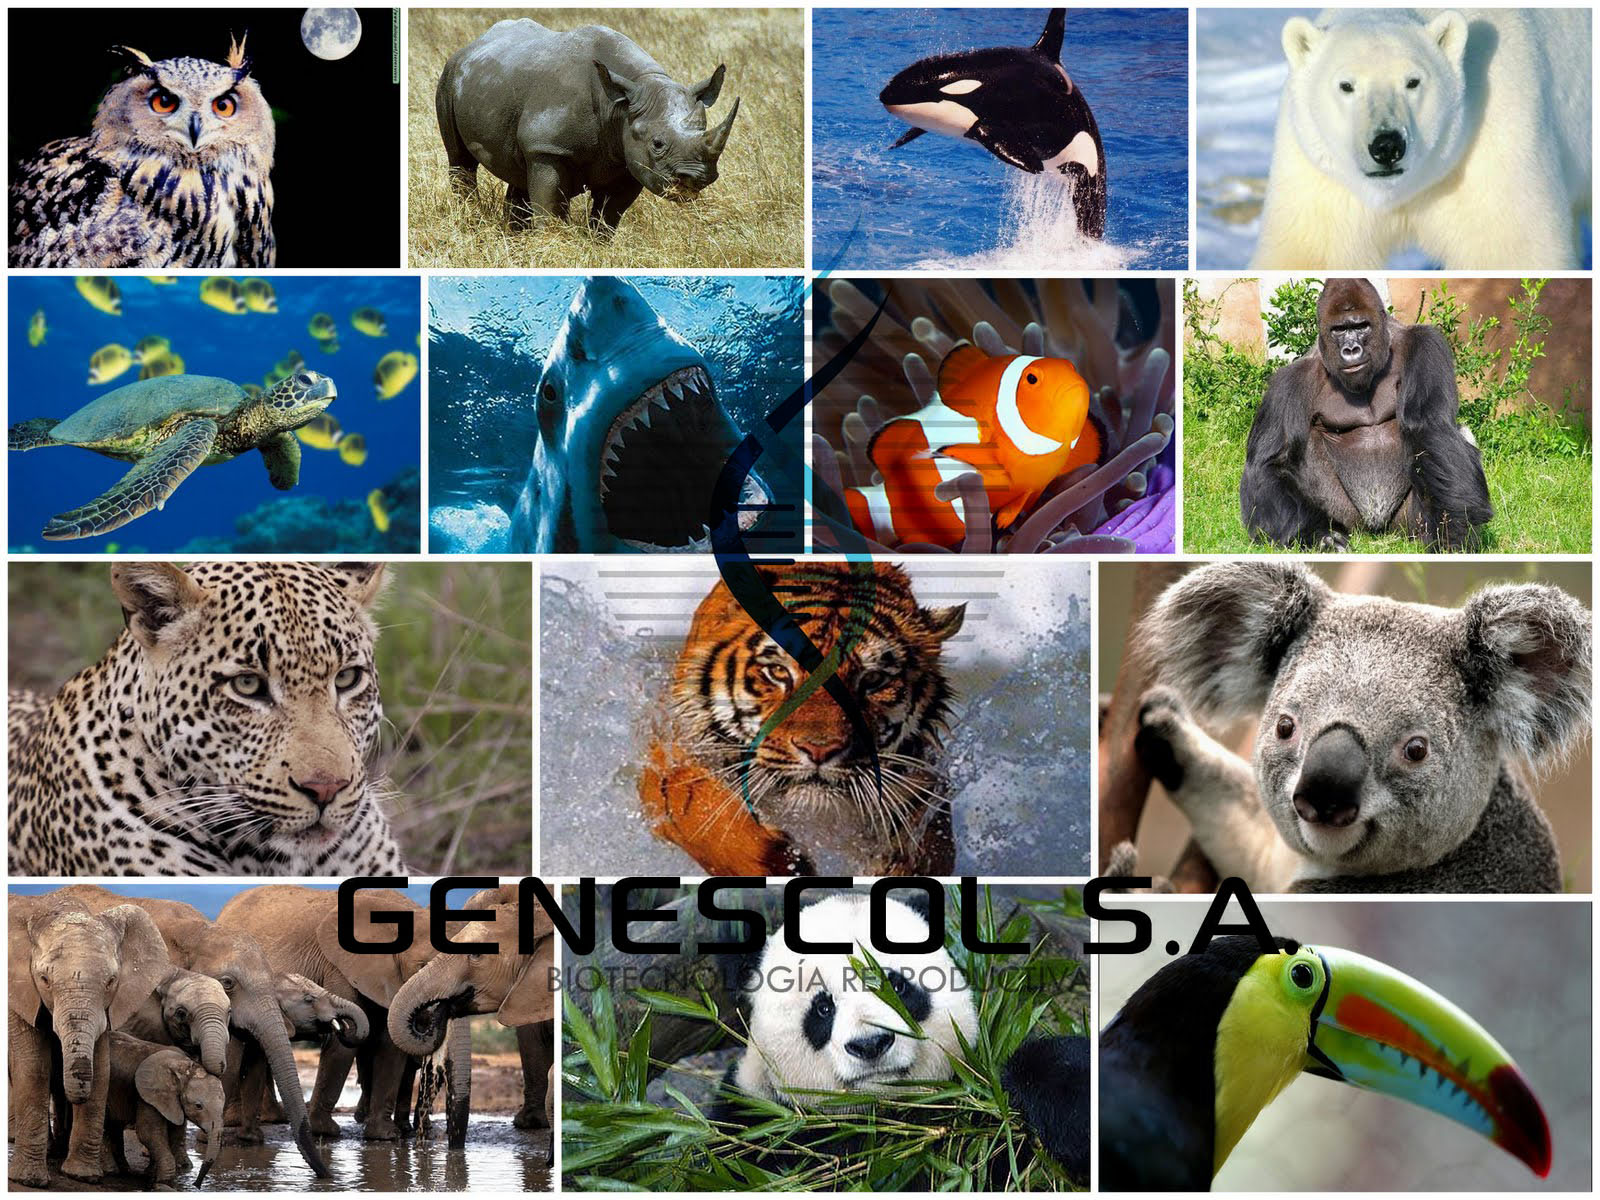 Animales en peligro de extinción.